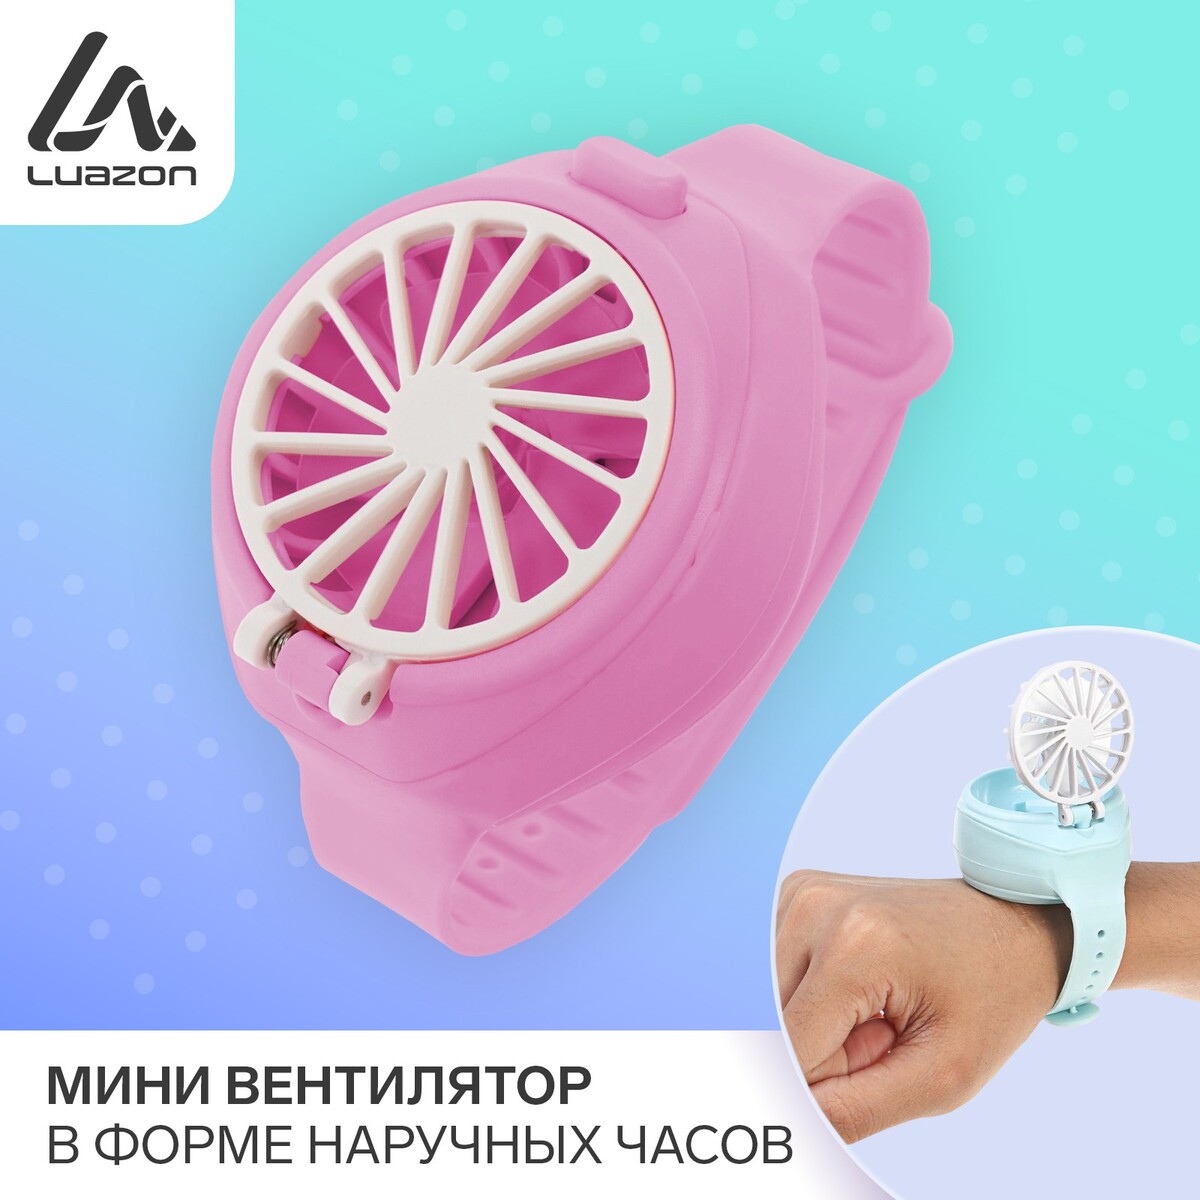 Мини вентилятор в форме наручных часов lof-10, 3 скорости, поворотный, розовый atemi мини степпер поворотный с эспандерами as1320m